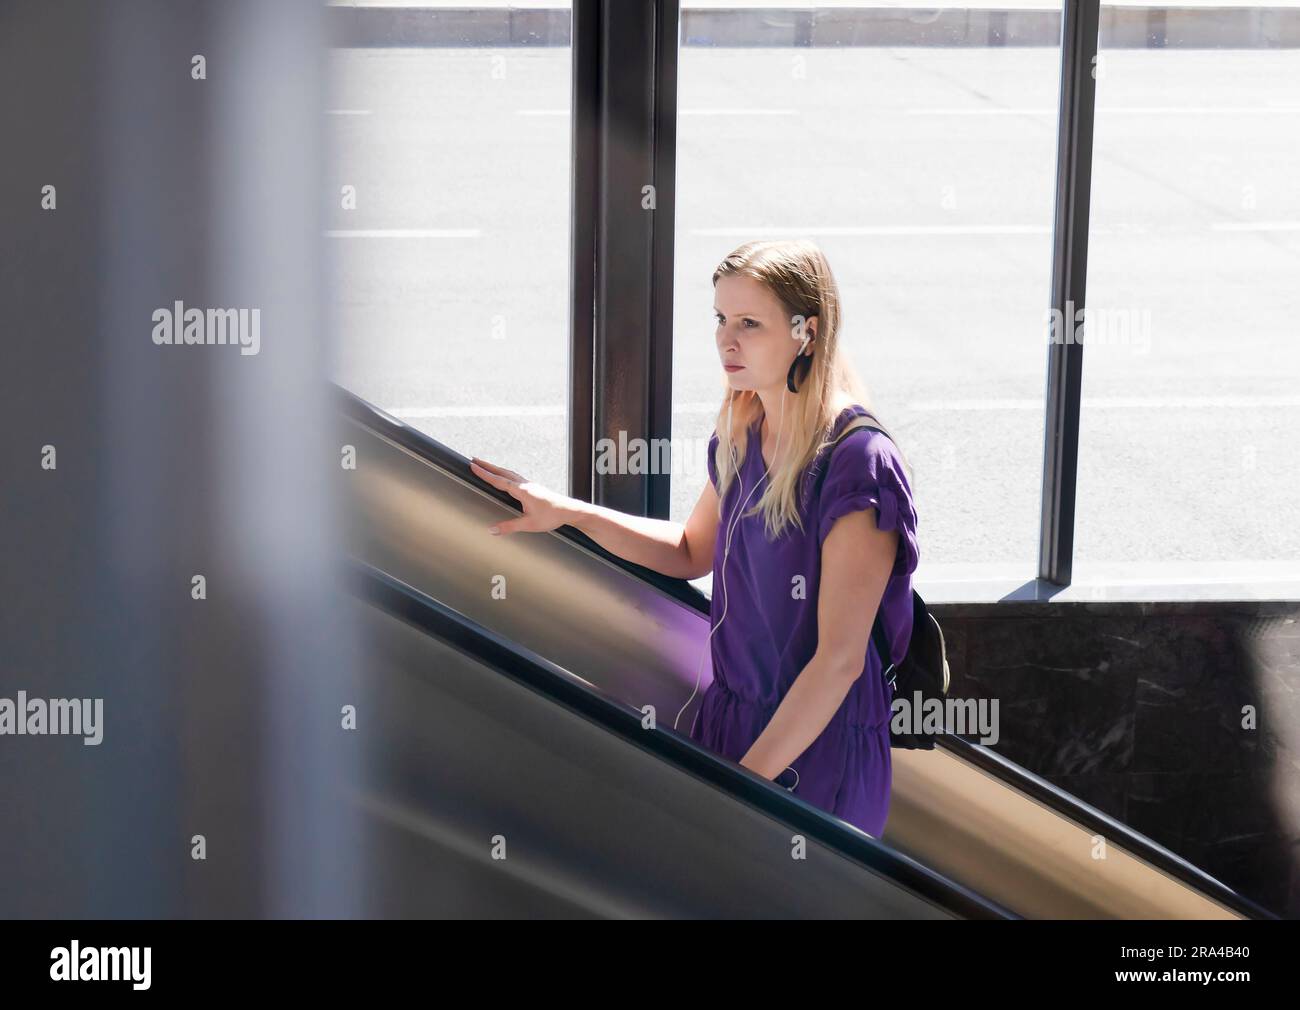 Belgrado, Serbia - 15 giugno 2022: Giovane donna in abito viola che sale sulla scala mobile della metropolitana, in una giornata di sole Foto Stock